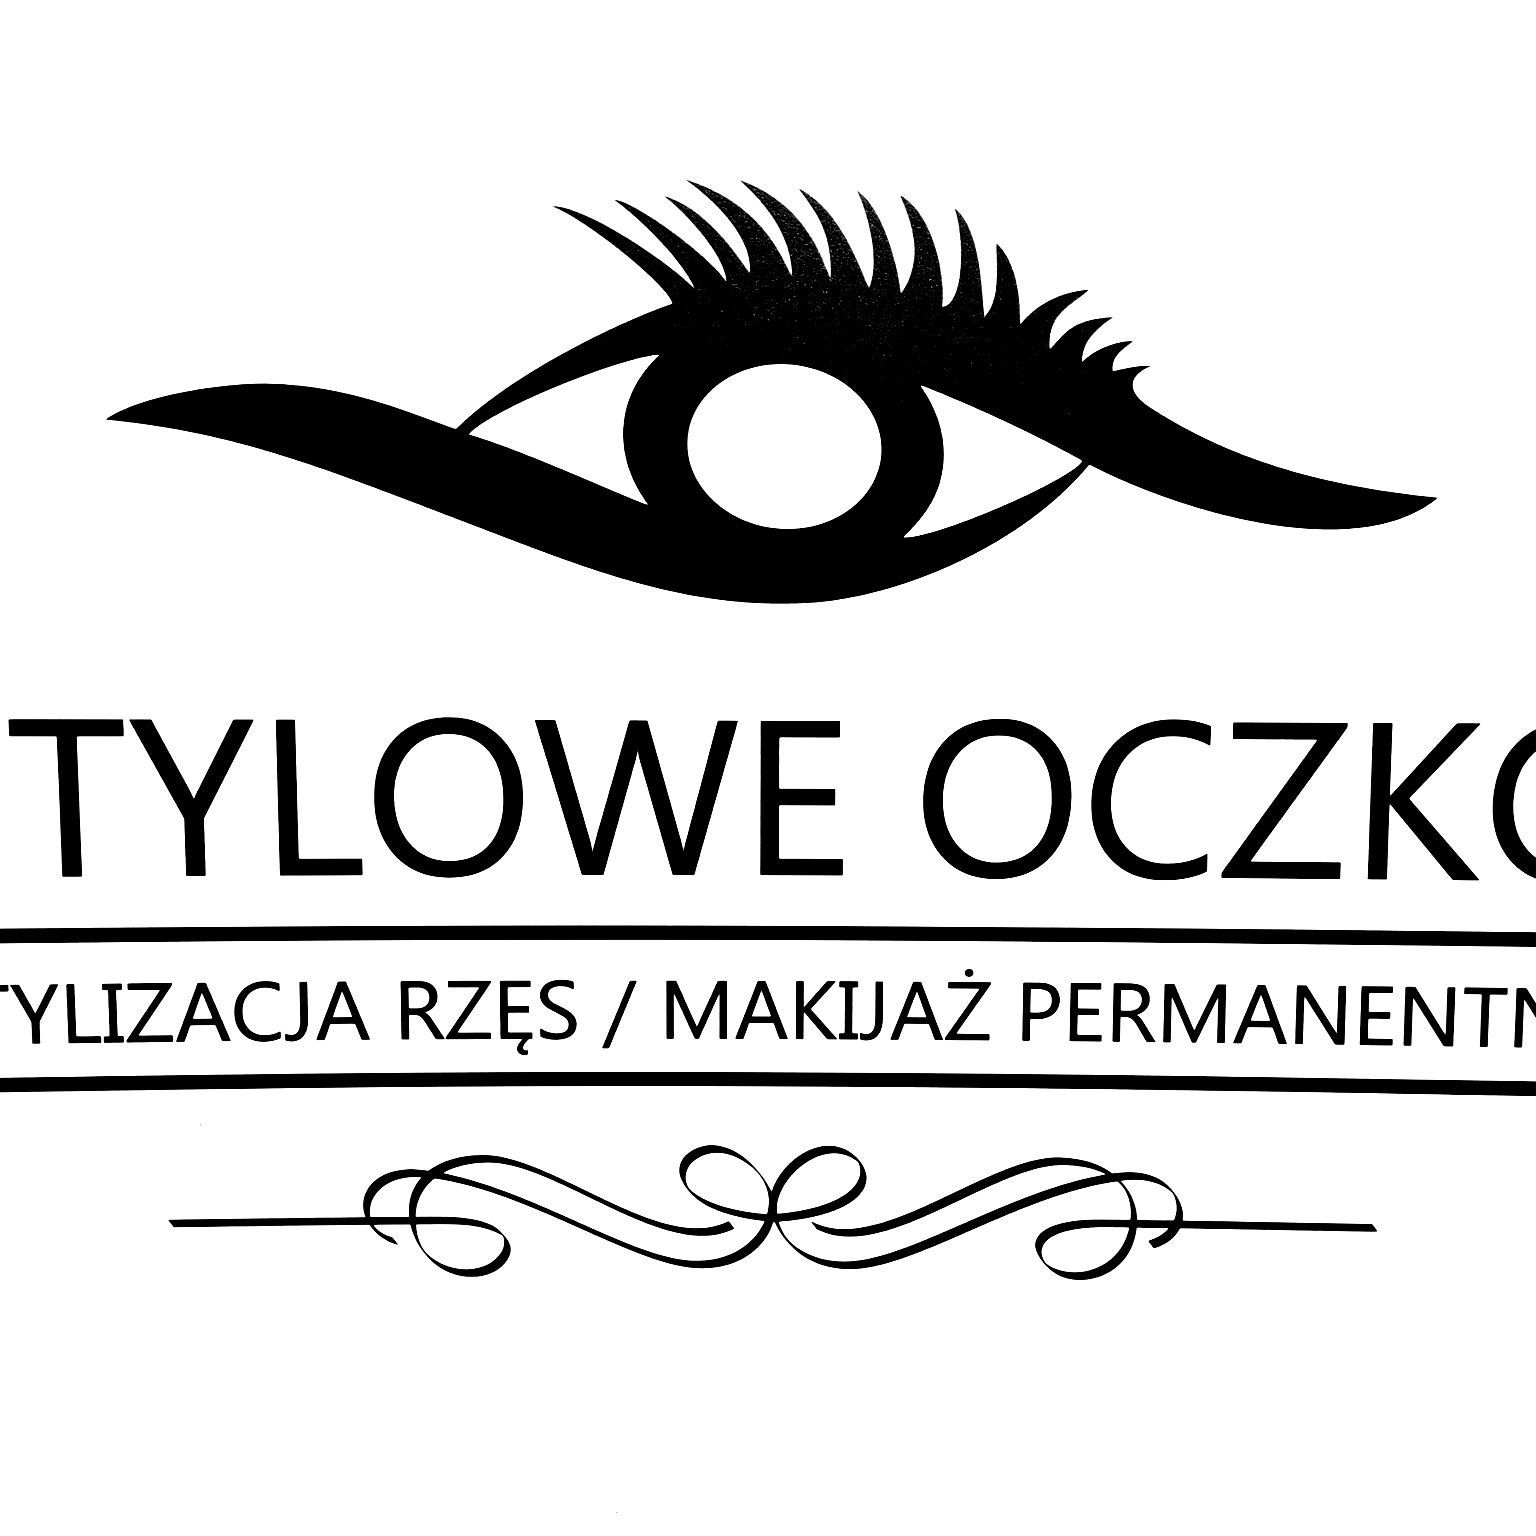 Stylowe Oczko, Slonimska, 5 lokal 6, 15-029, Białystok